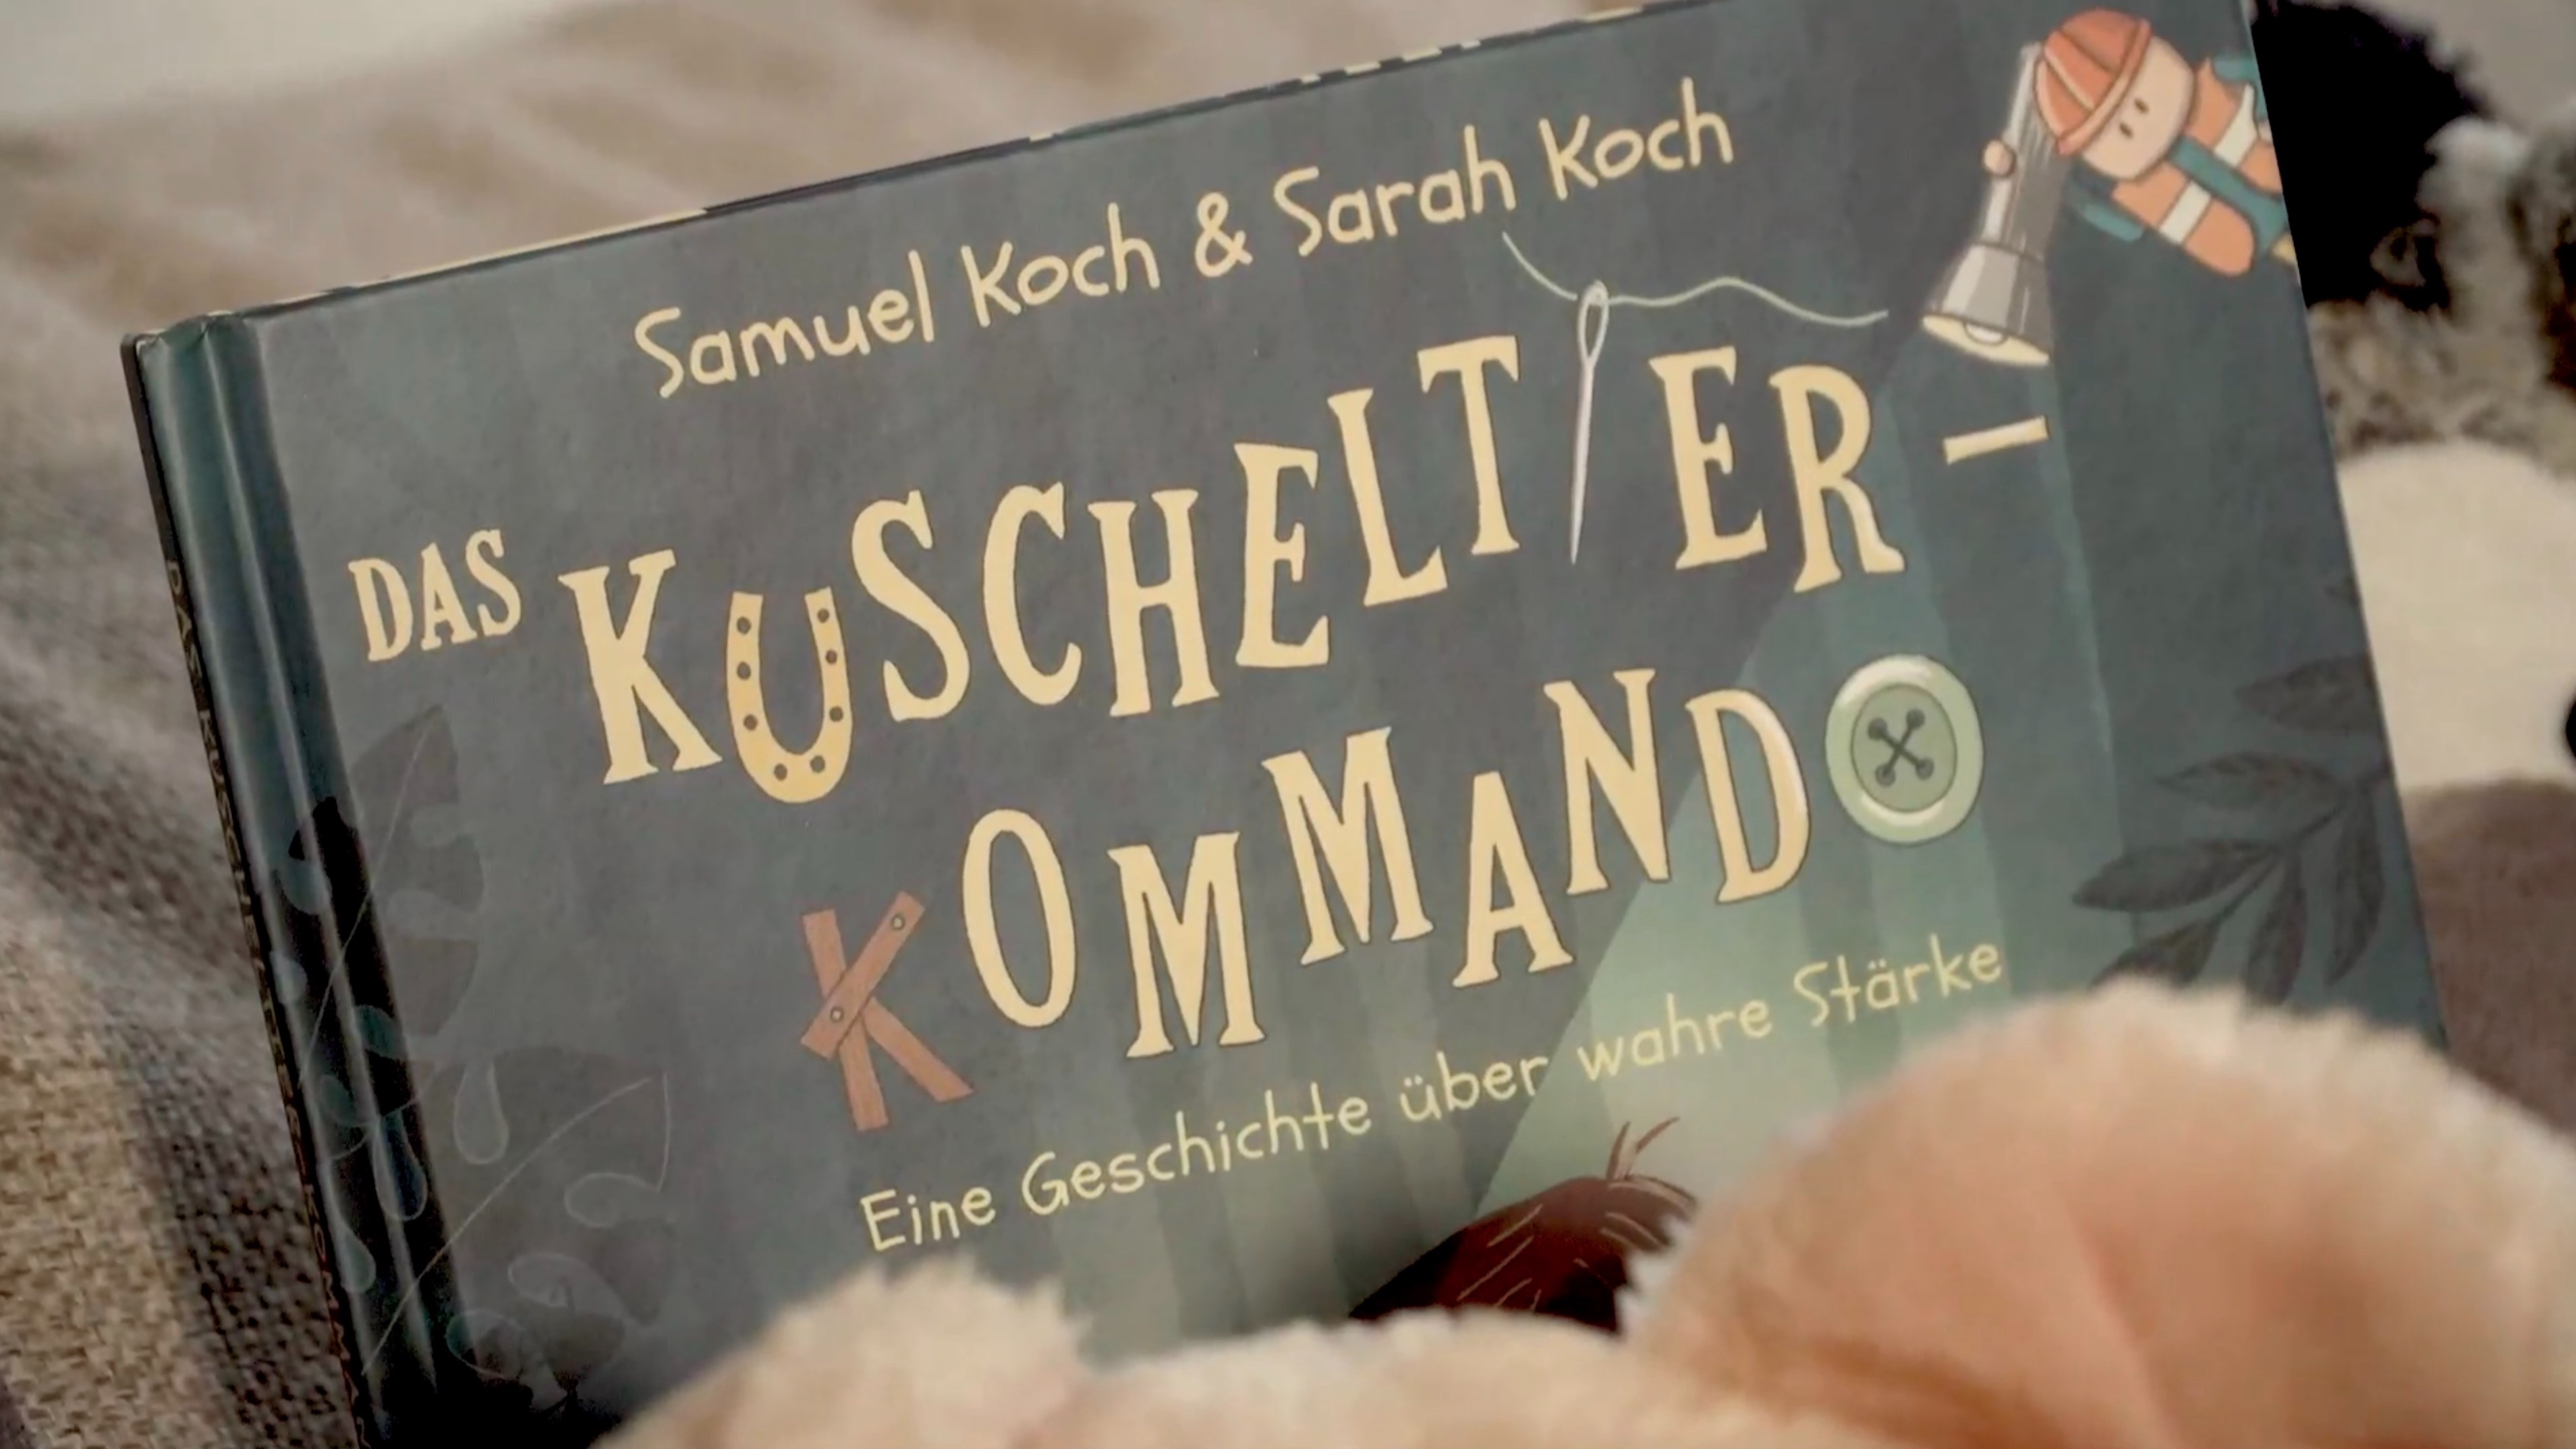 Das Kucheltierkommando - Samuel und Sarah Koch (Folge 19)